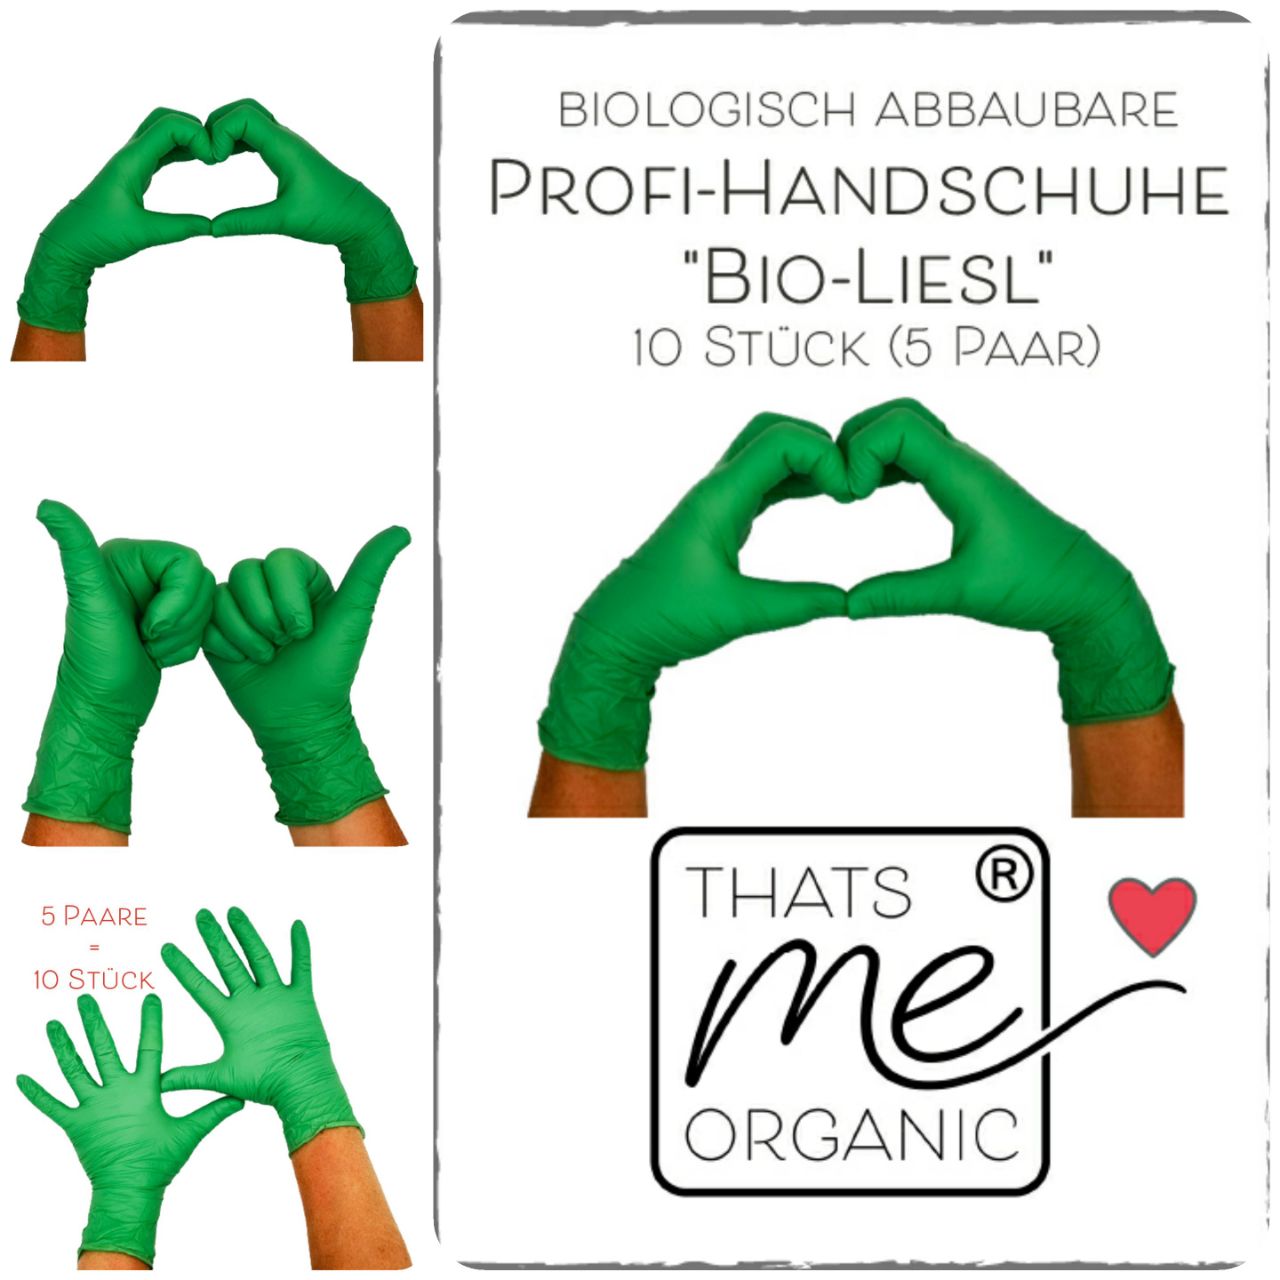 Guanti professionali "Bio-Liesl" biodegradabili 10 pezzi (5 paia) senza polvere e lattice